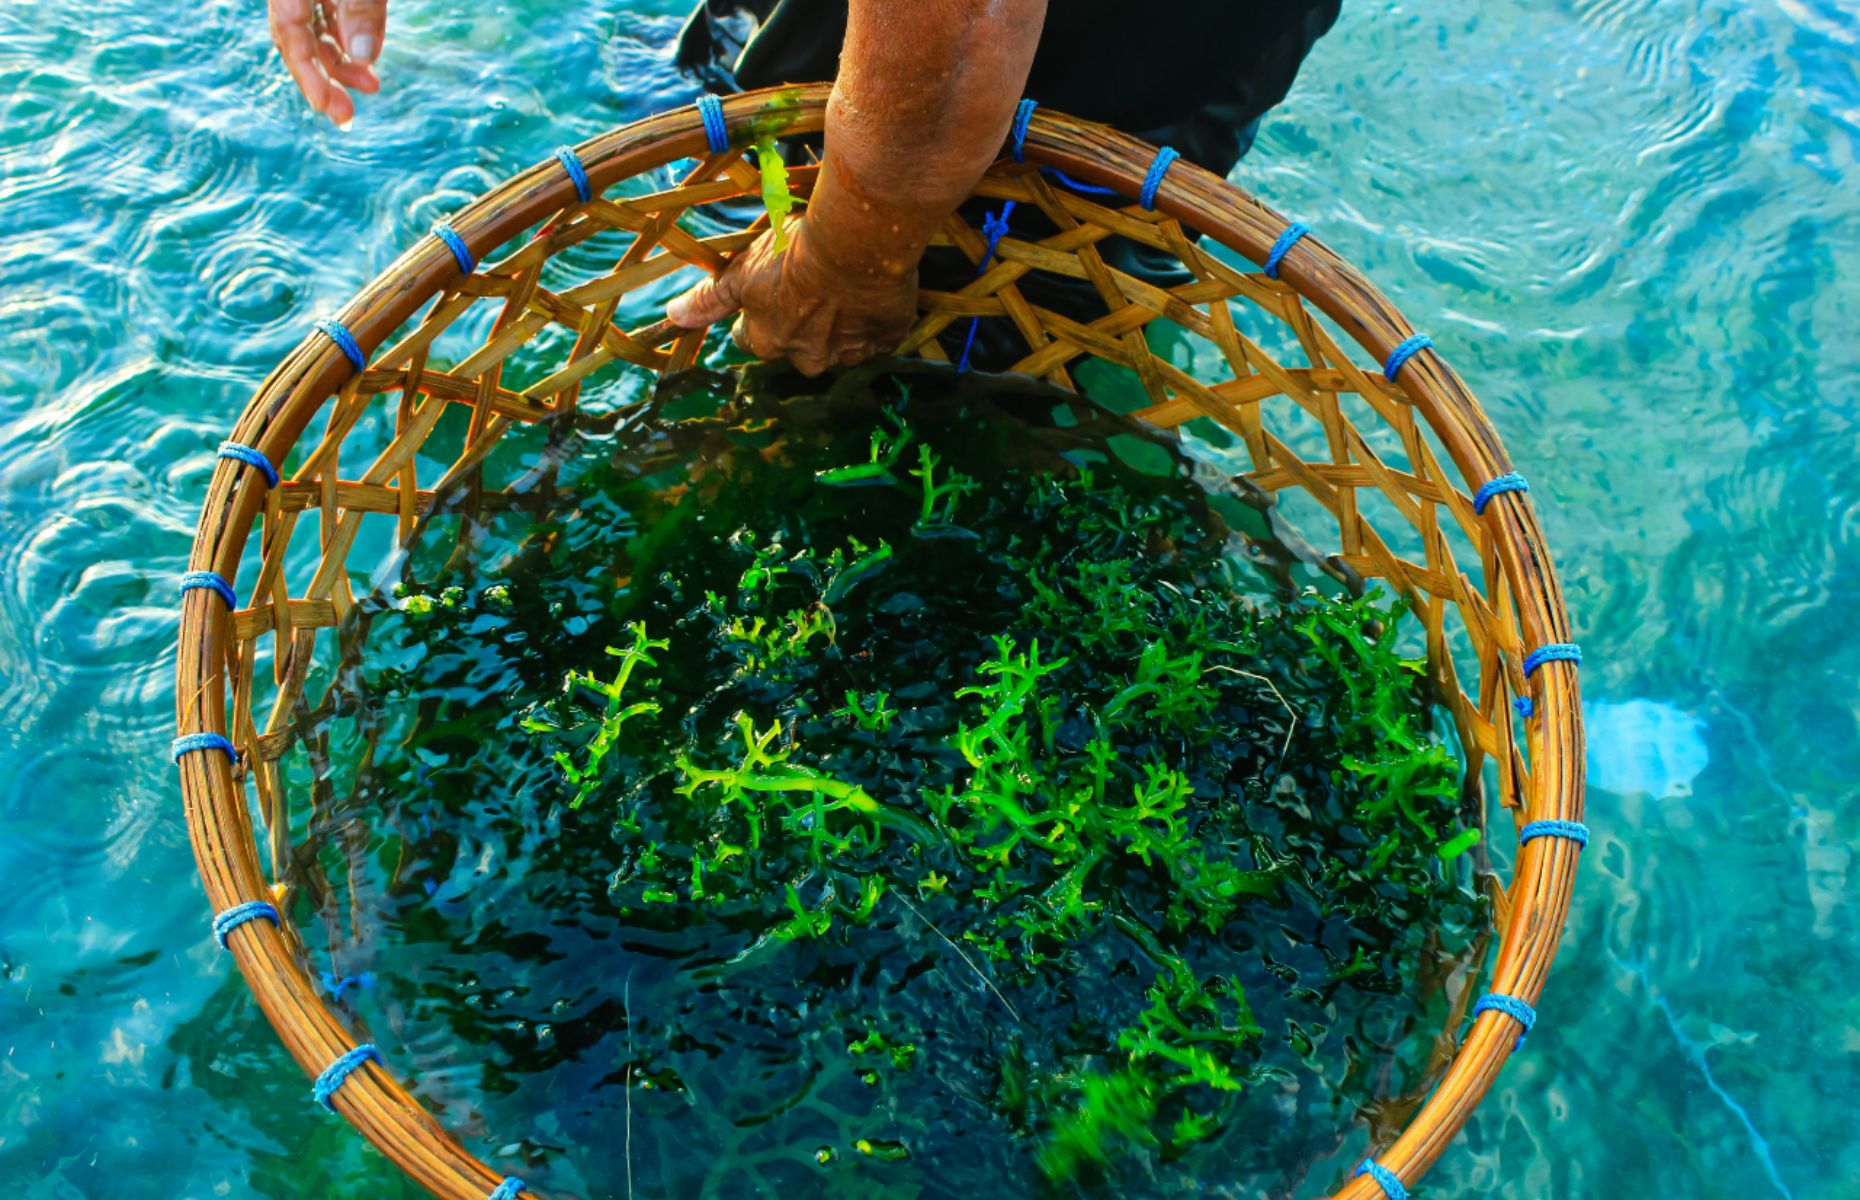 Seaweed farming (Image: Dimasranggah/Shutterstock)